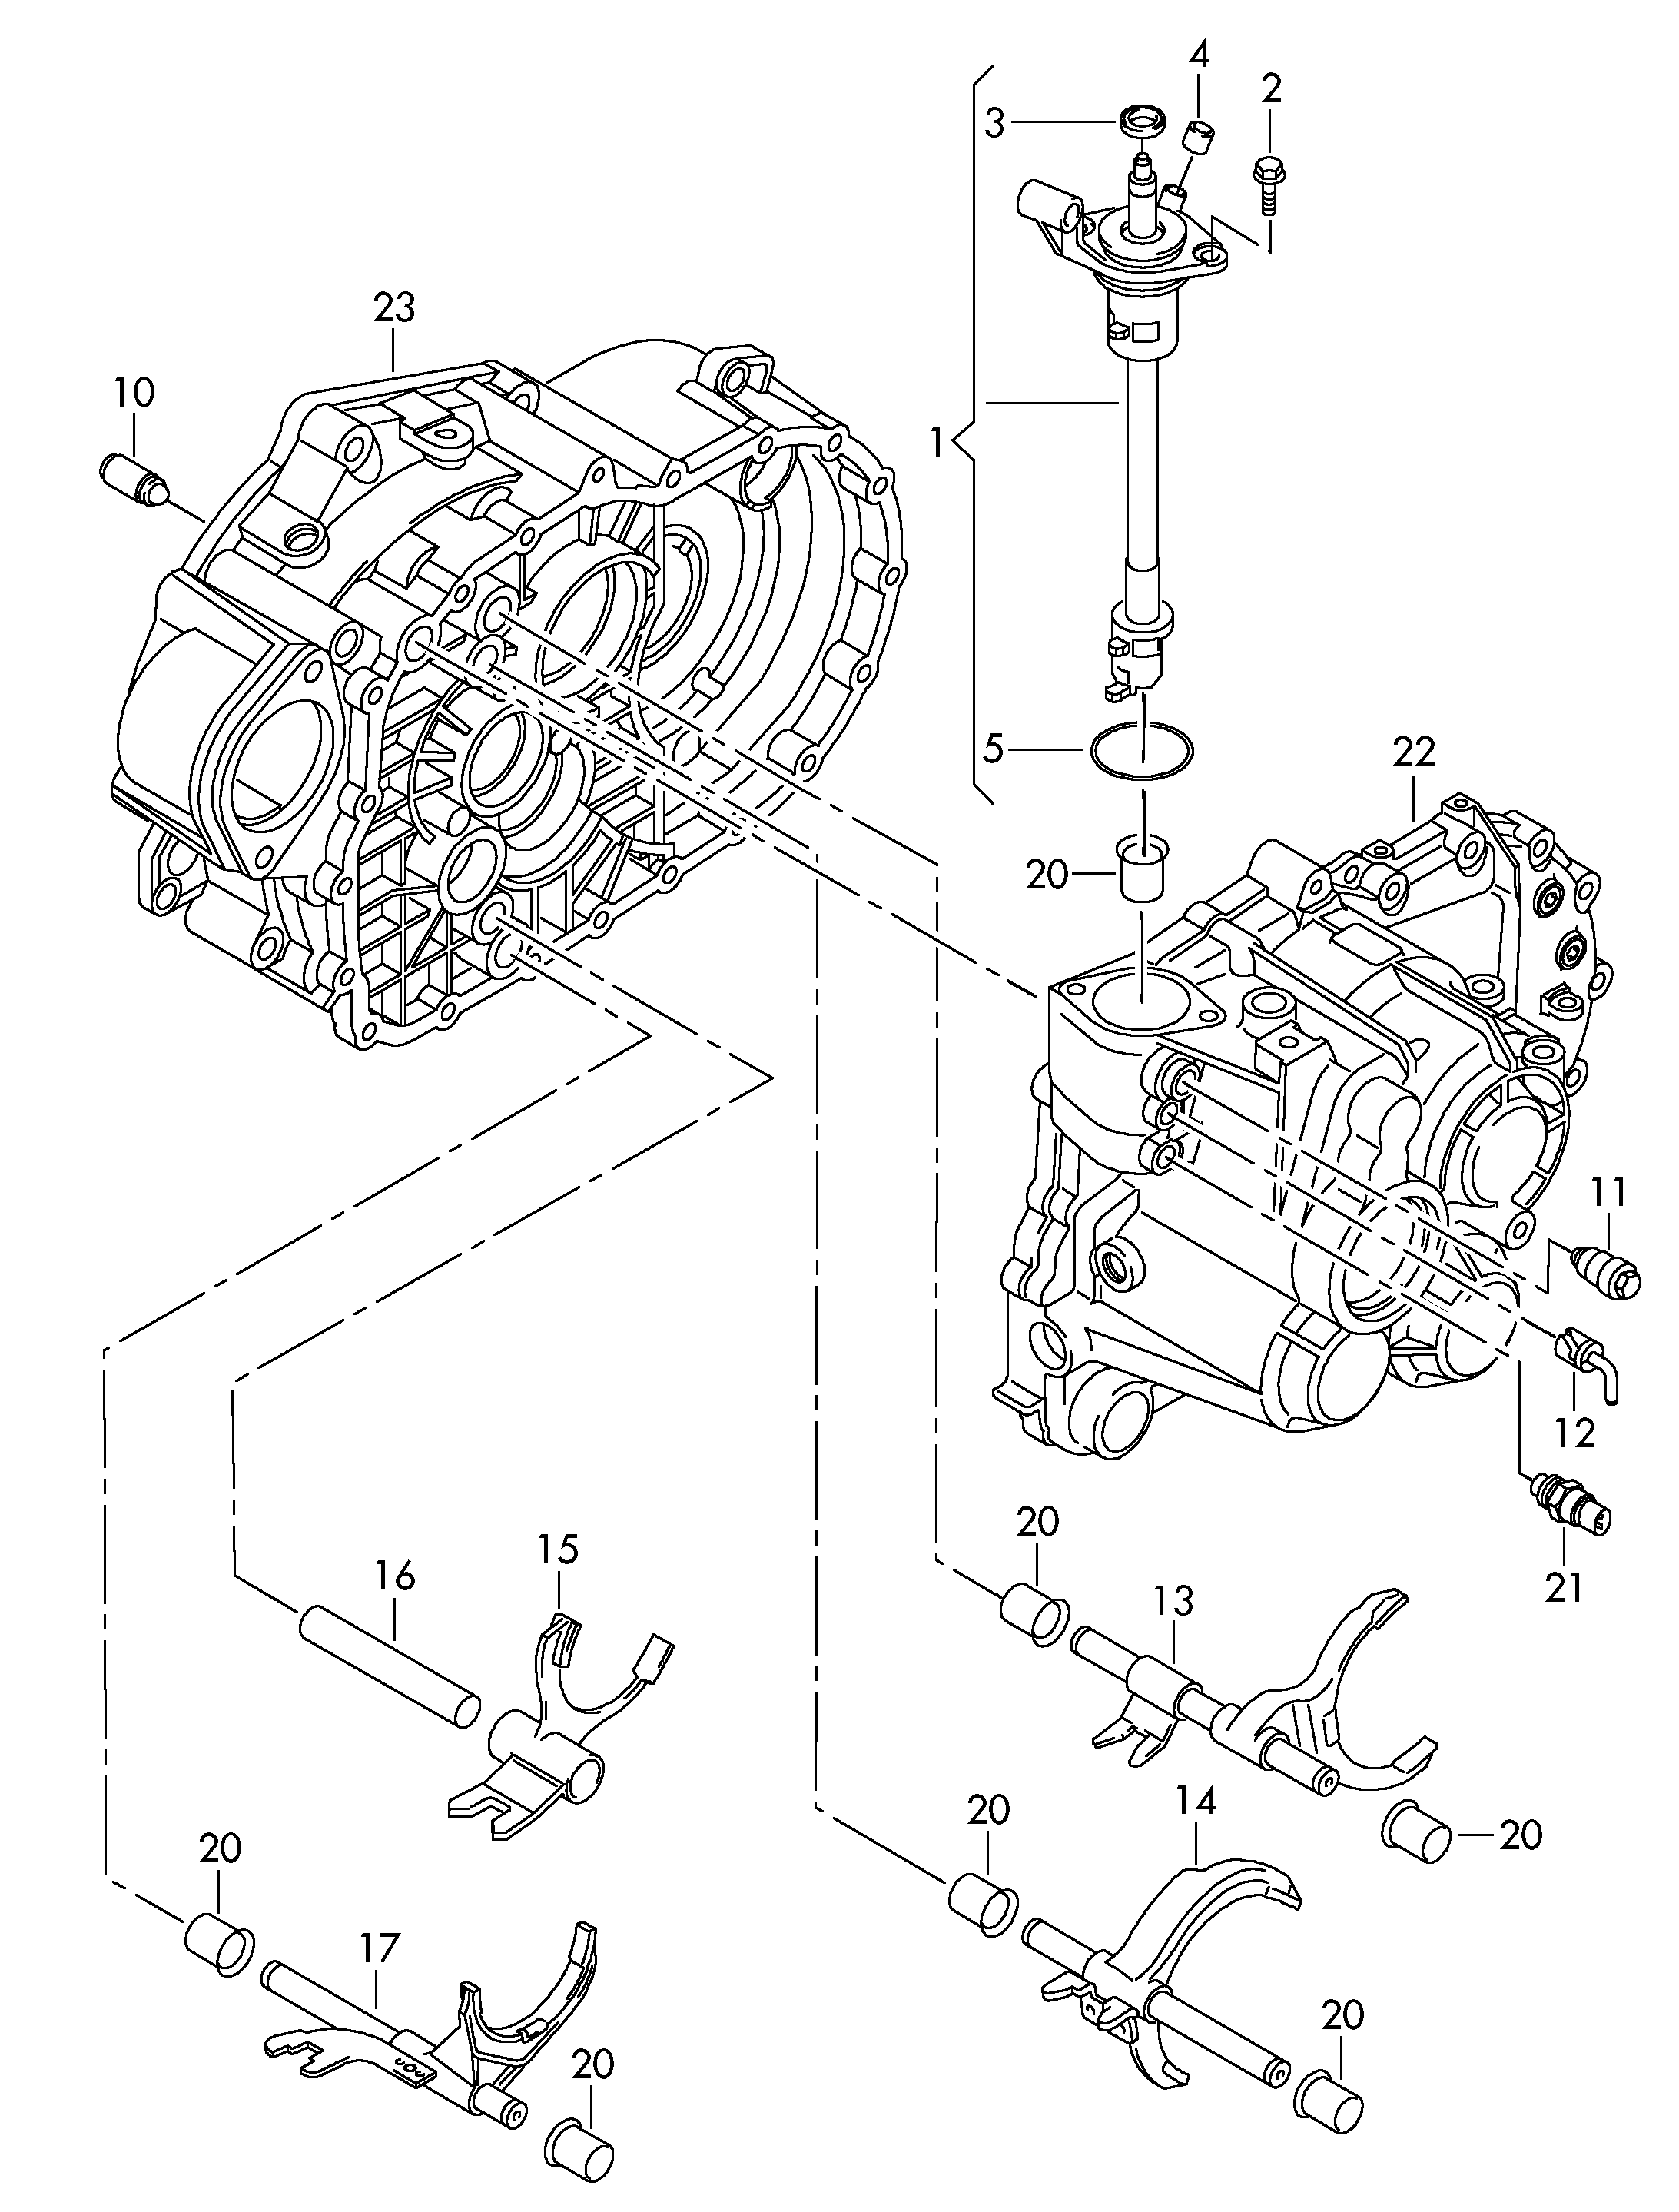 shift rodSelector fork6-speed manual transmission  - Octavia - oct